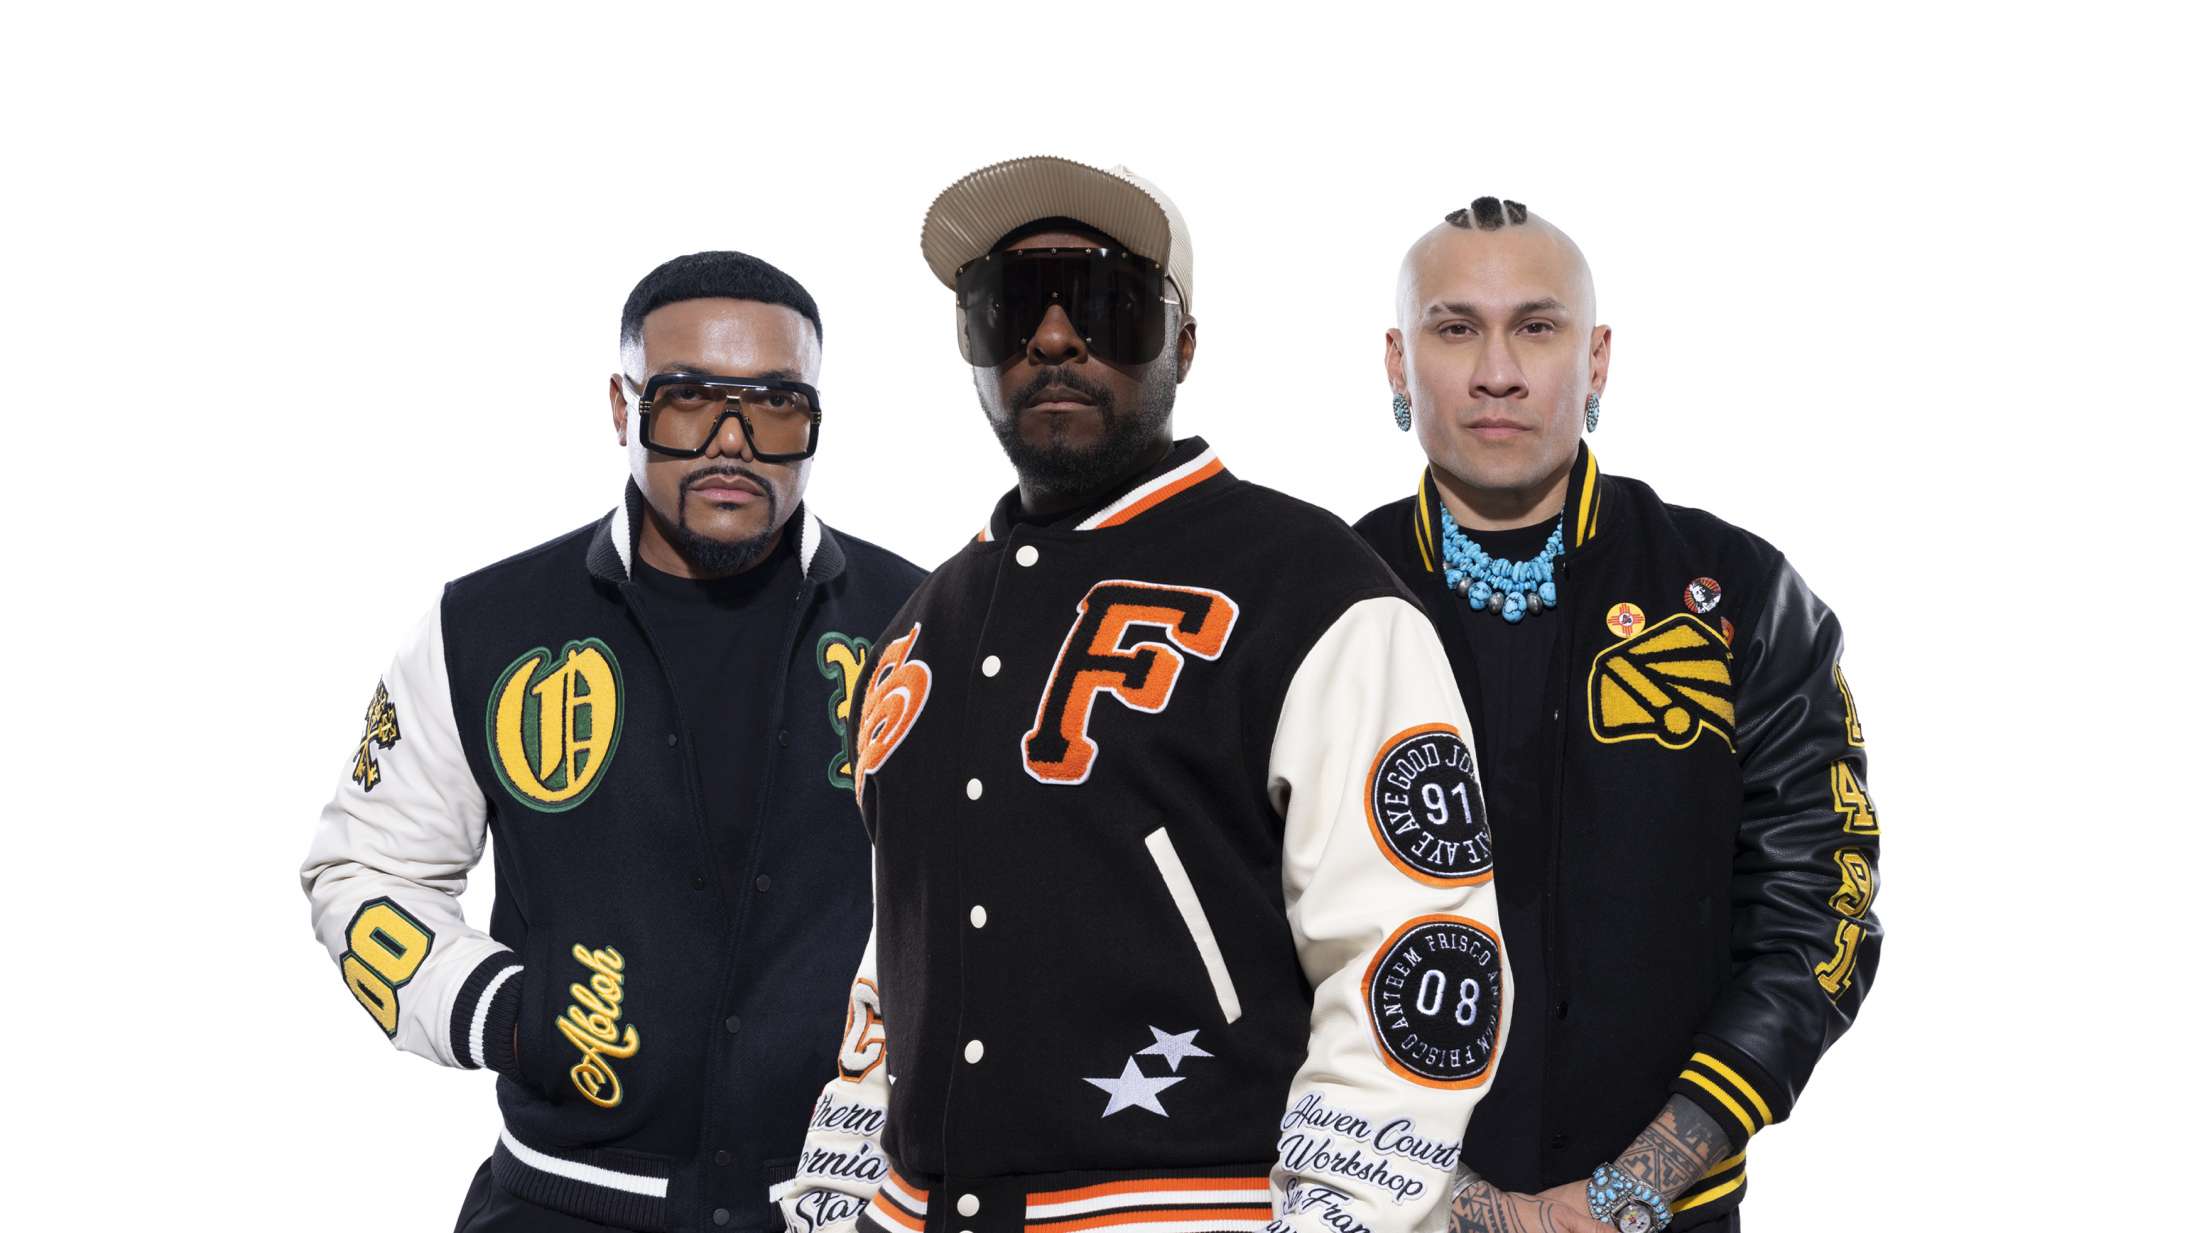 Tinderbox annoncerer 19 nye navne – blandt andre Black Eyed Peas og Lukas Graham